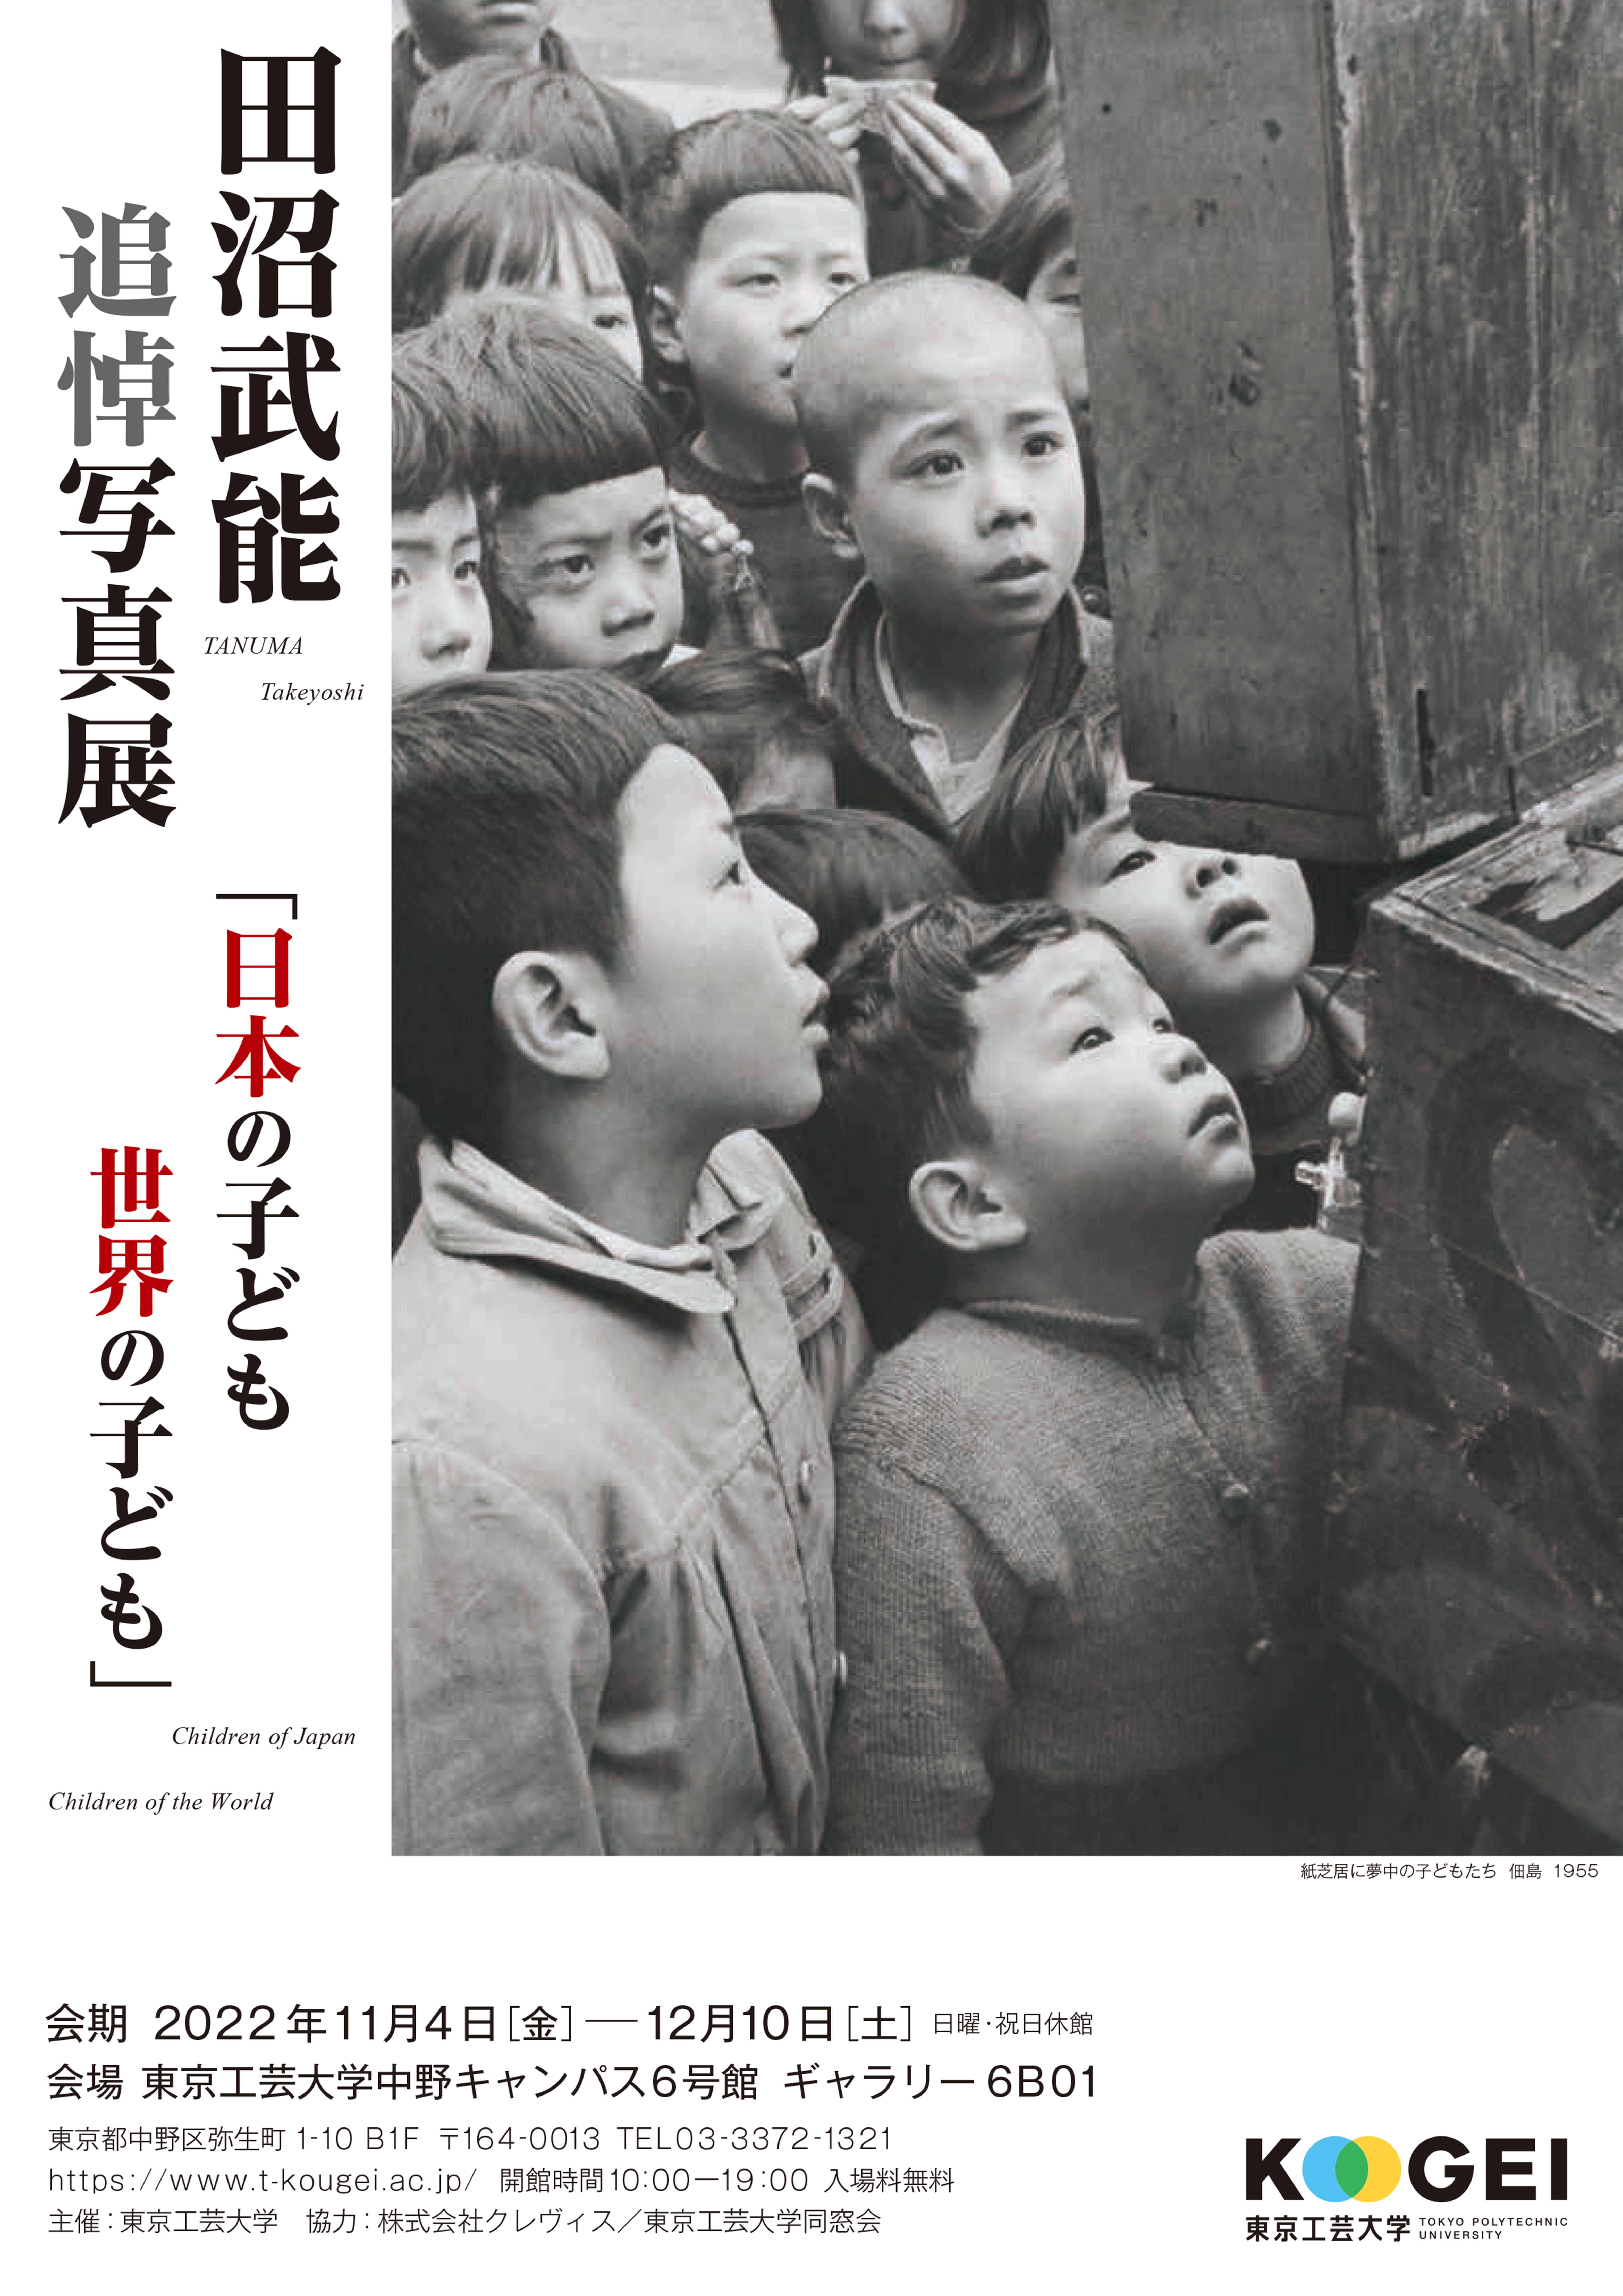 田沼武能 追悼写真展「日本の子ども世界の子ども」 -- 母校・東京工芸大学で開催 --